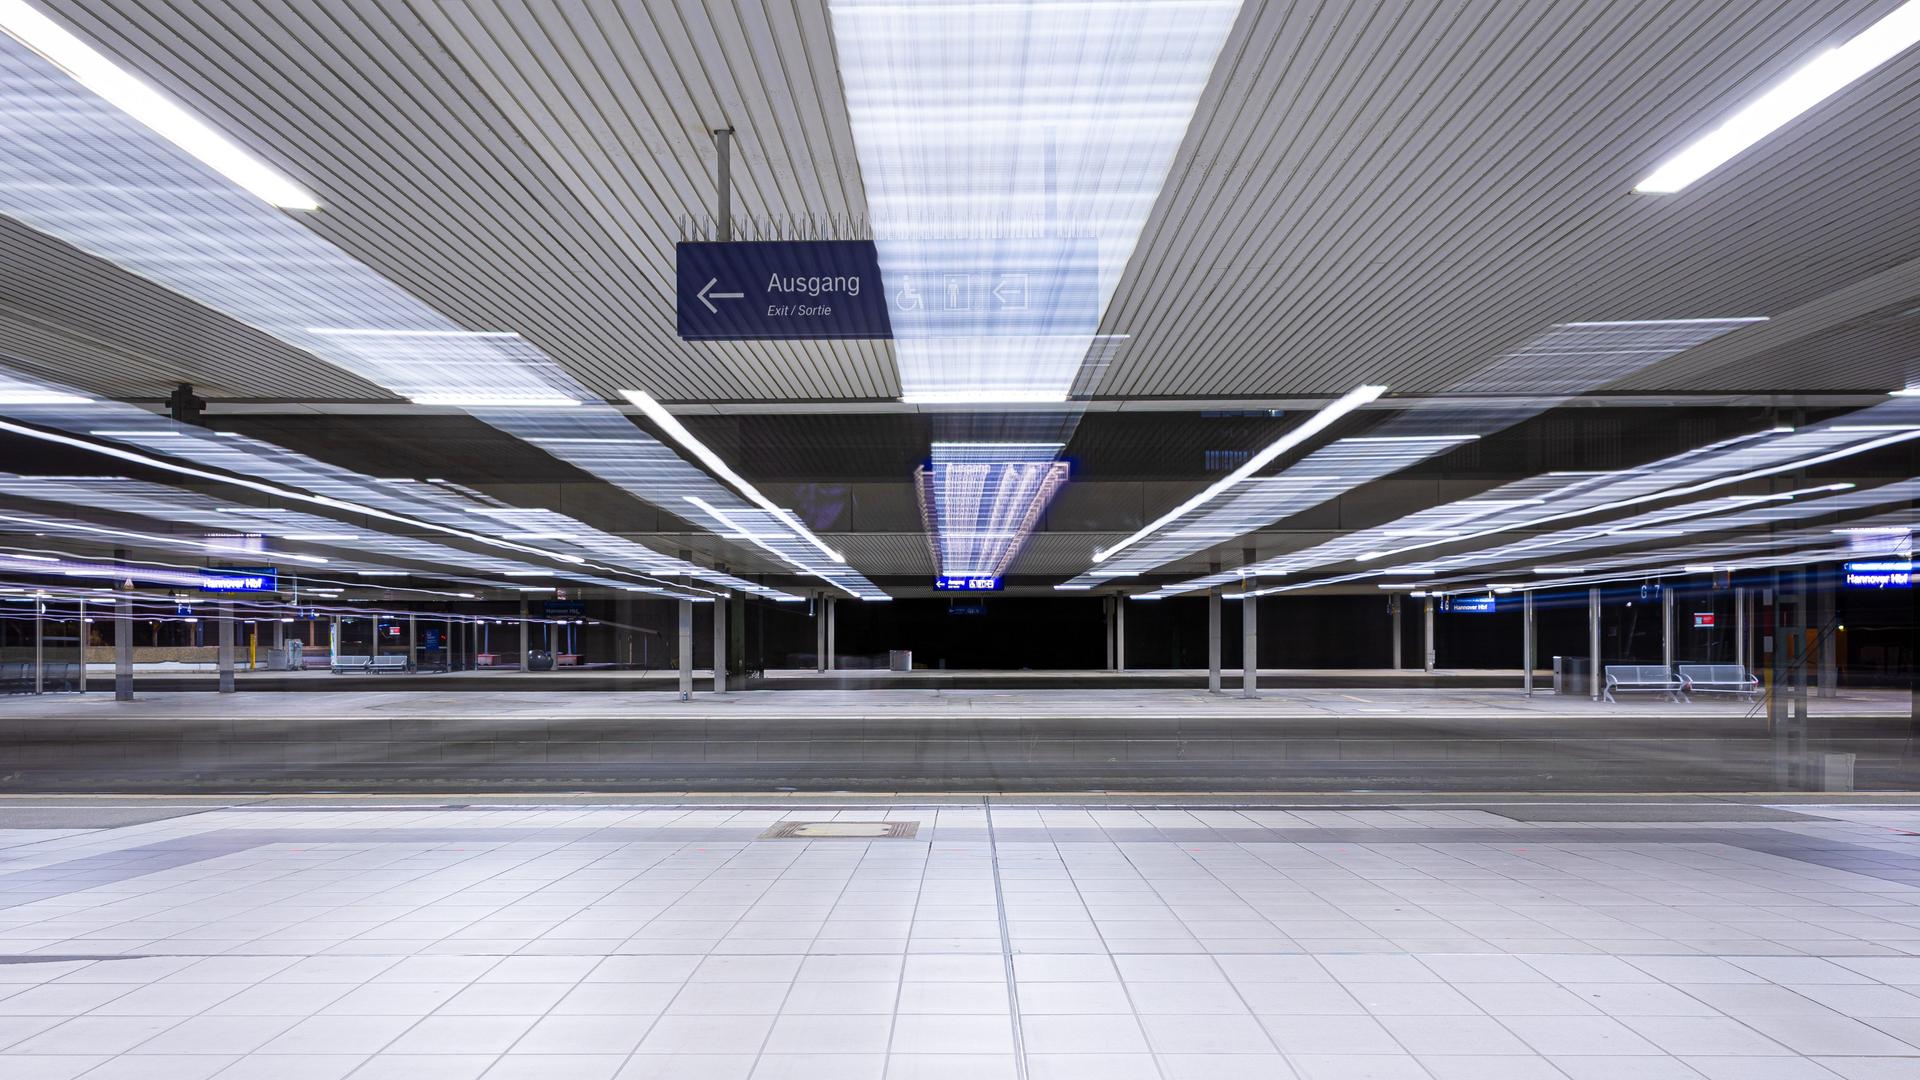 Menschenleer ist ein Bahnsteig im Hauptbahnhof Hannover